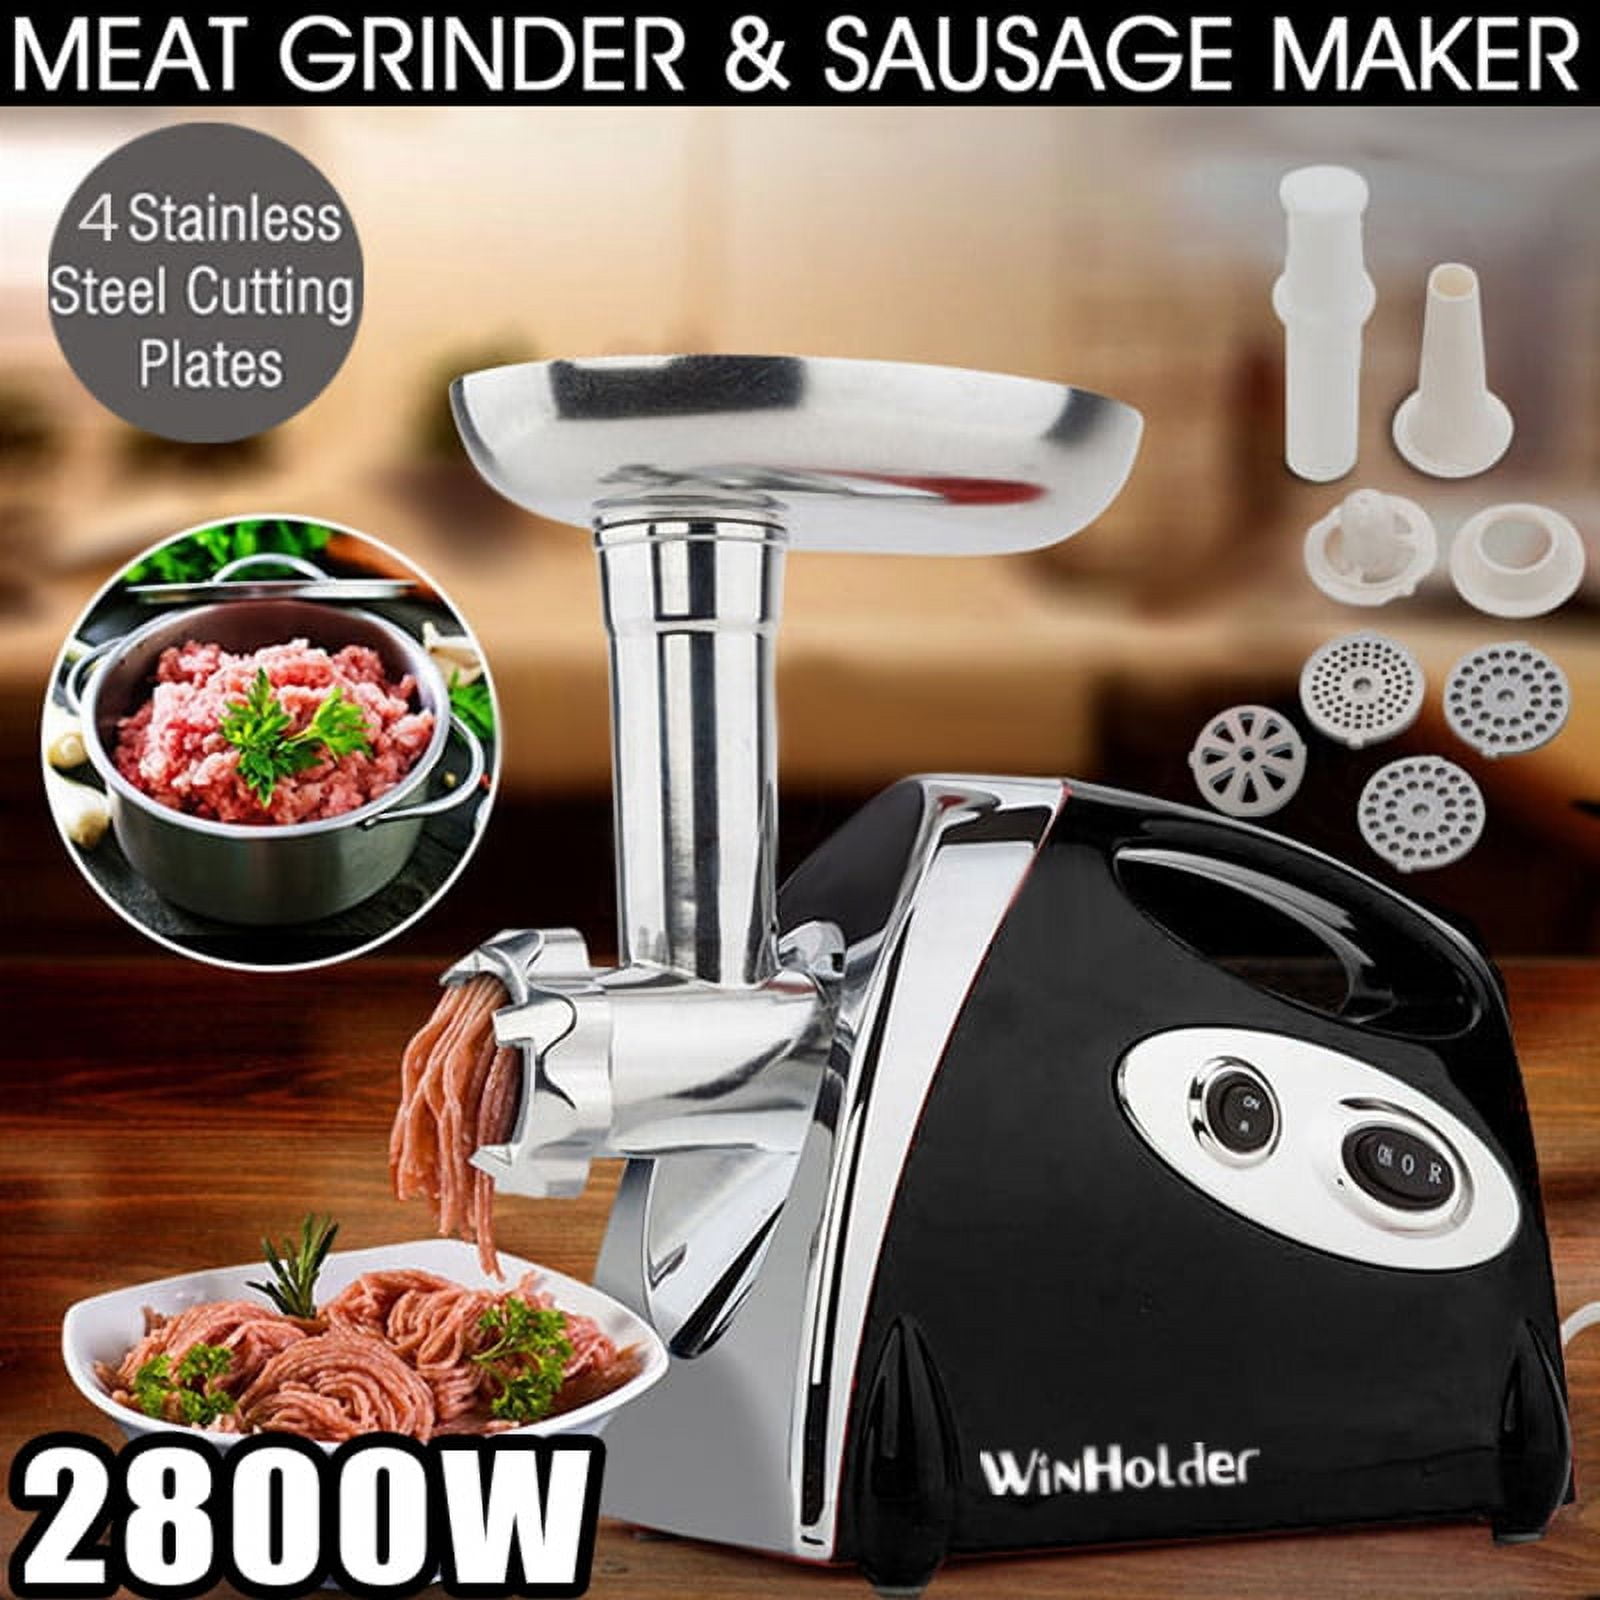 FUNKOL 800W Meat Grinder Electric Sausage Maker Food Grinder